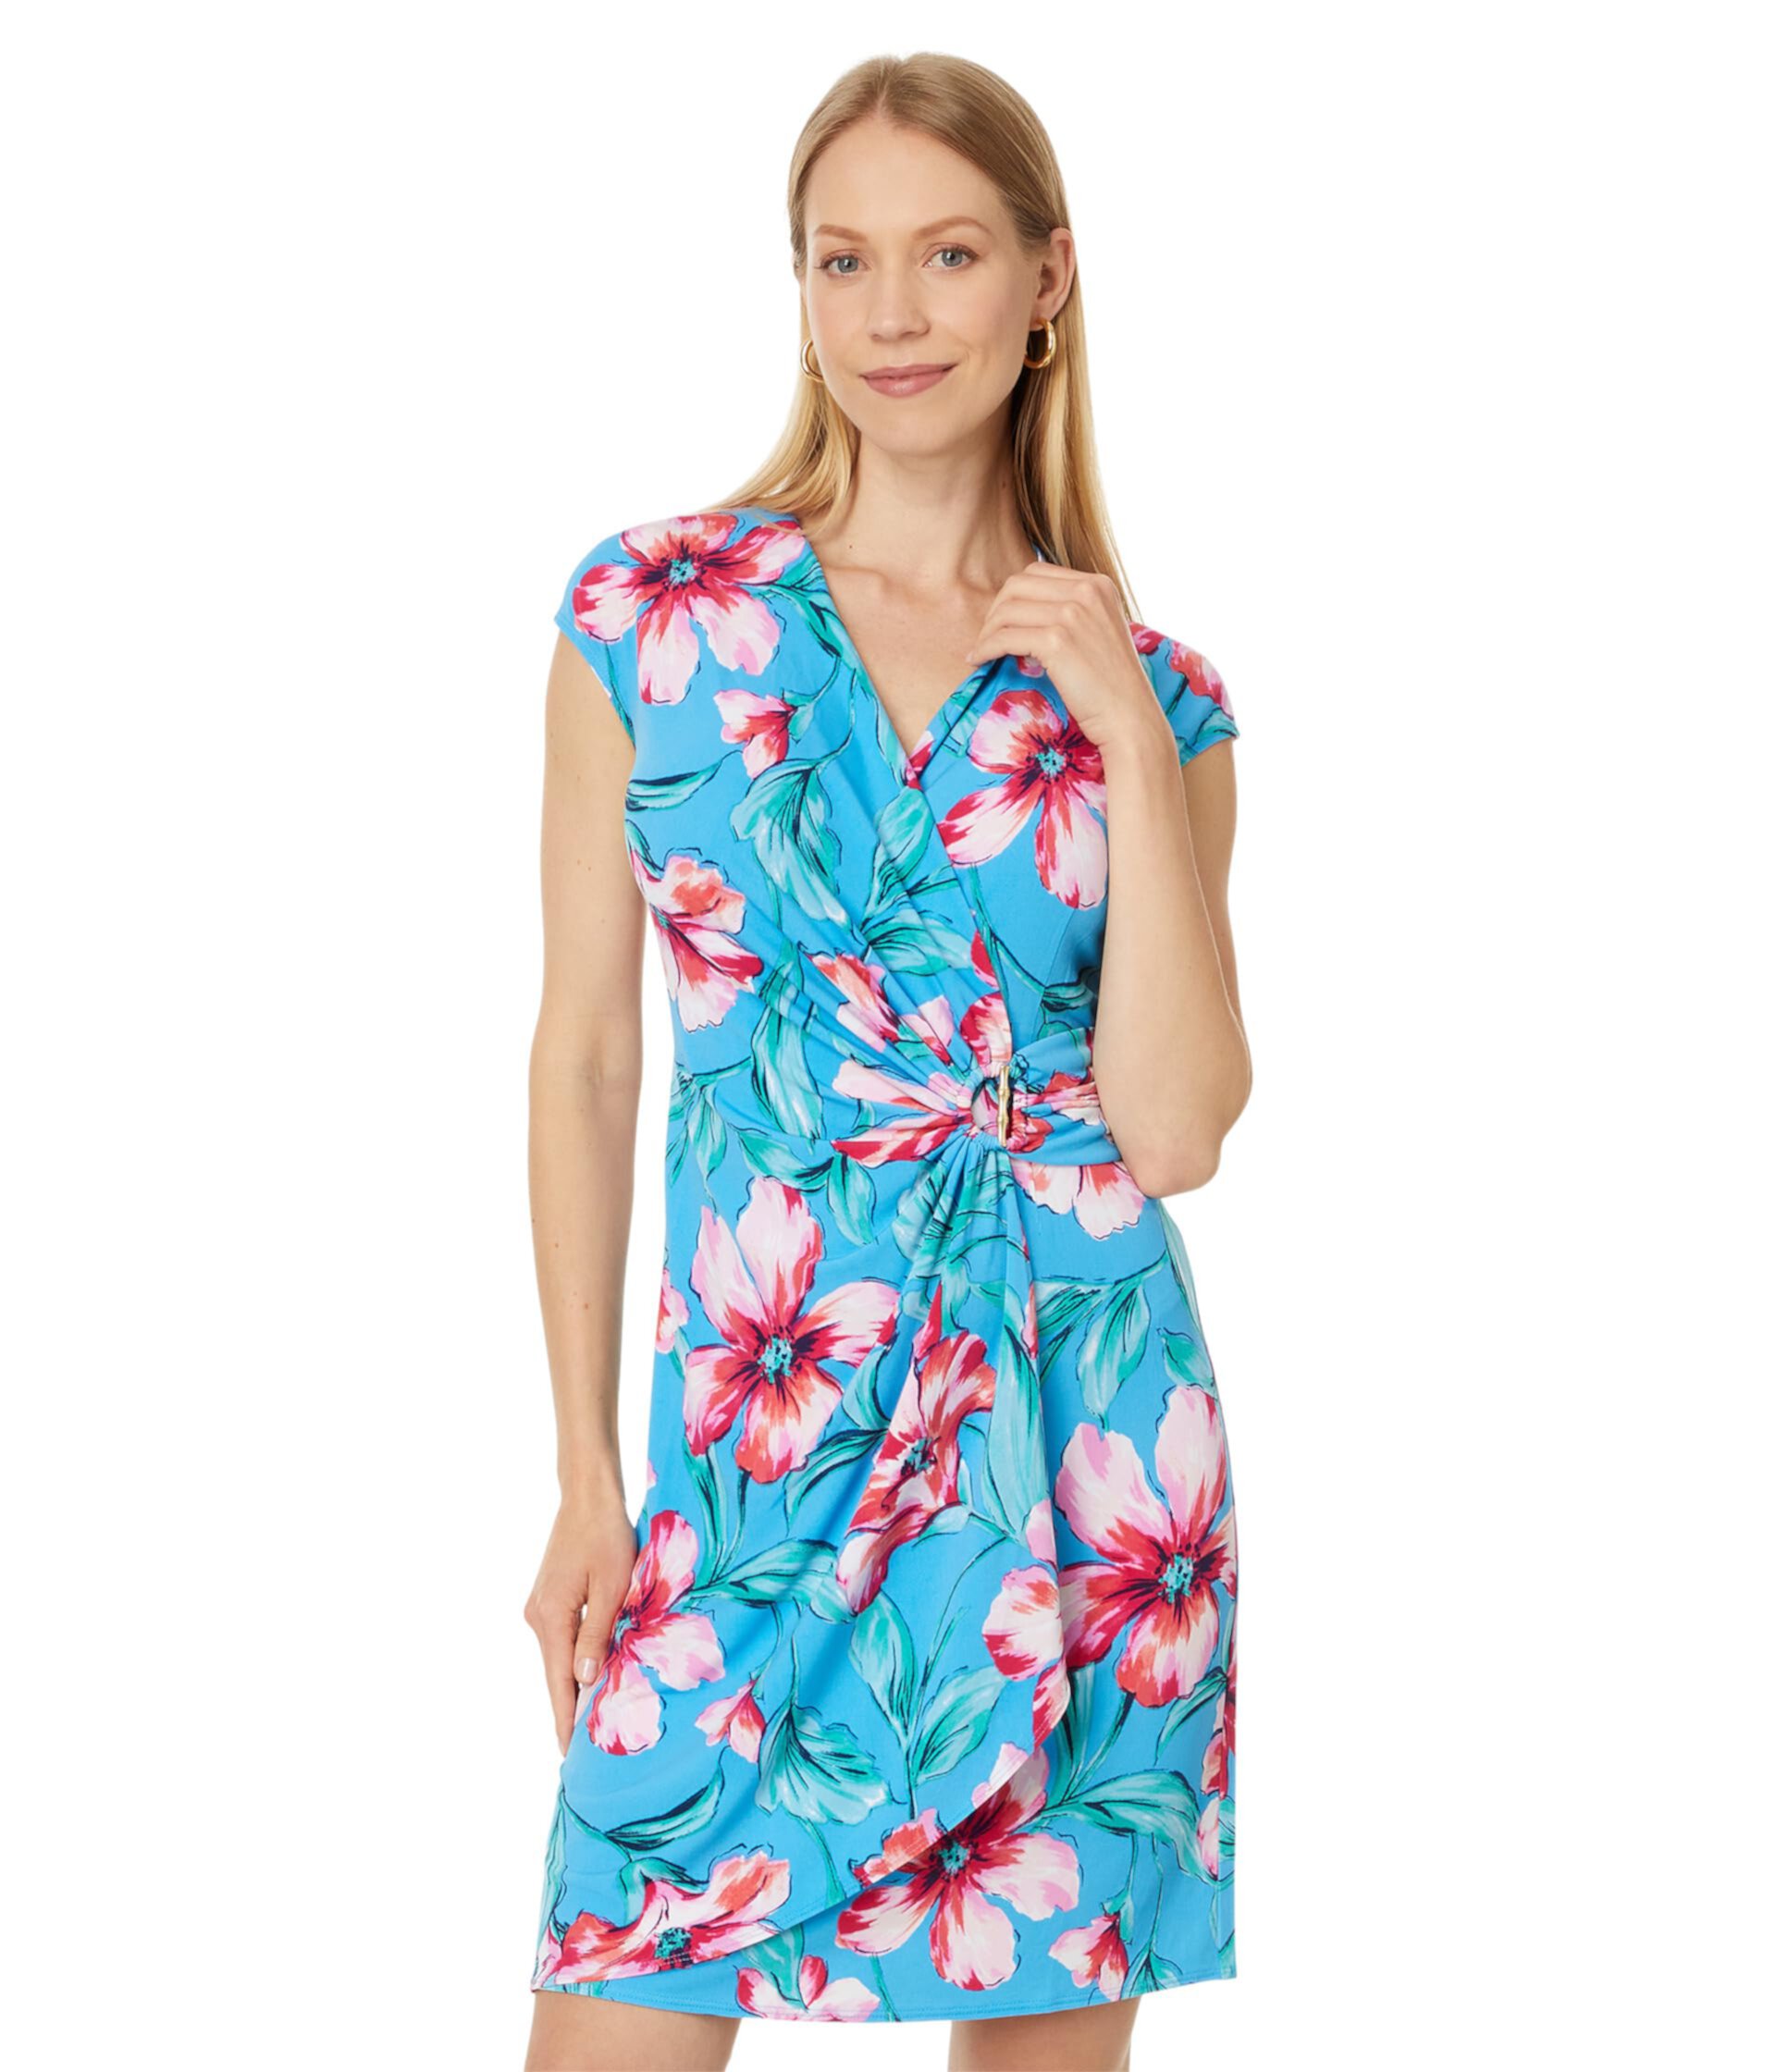 Clara Stripe Barts Blossom Dress Tommy Bahama